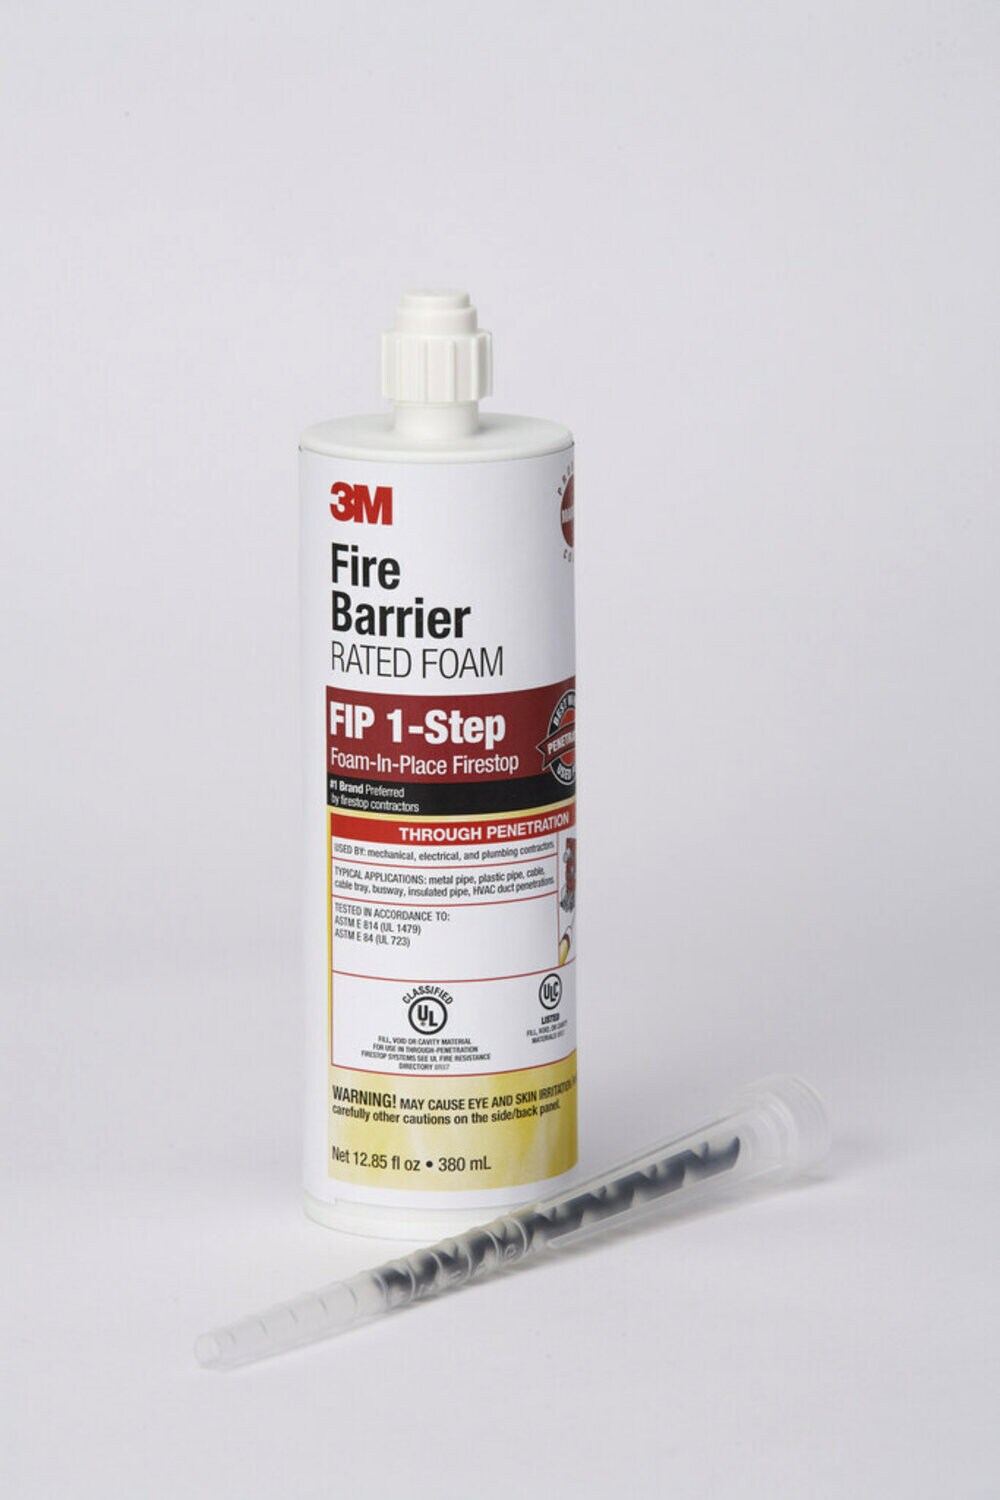 7100020738 - 3M Fire Barrier Rated Foam FIP 1-Step, Maroon, 12.85 fl oz Cartridge,
(6 Each) Case